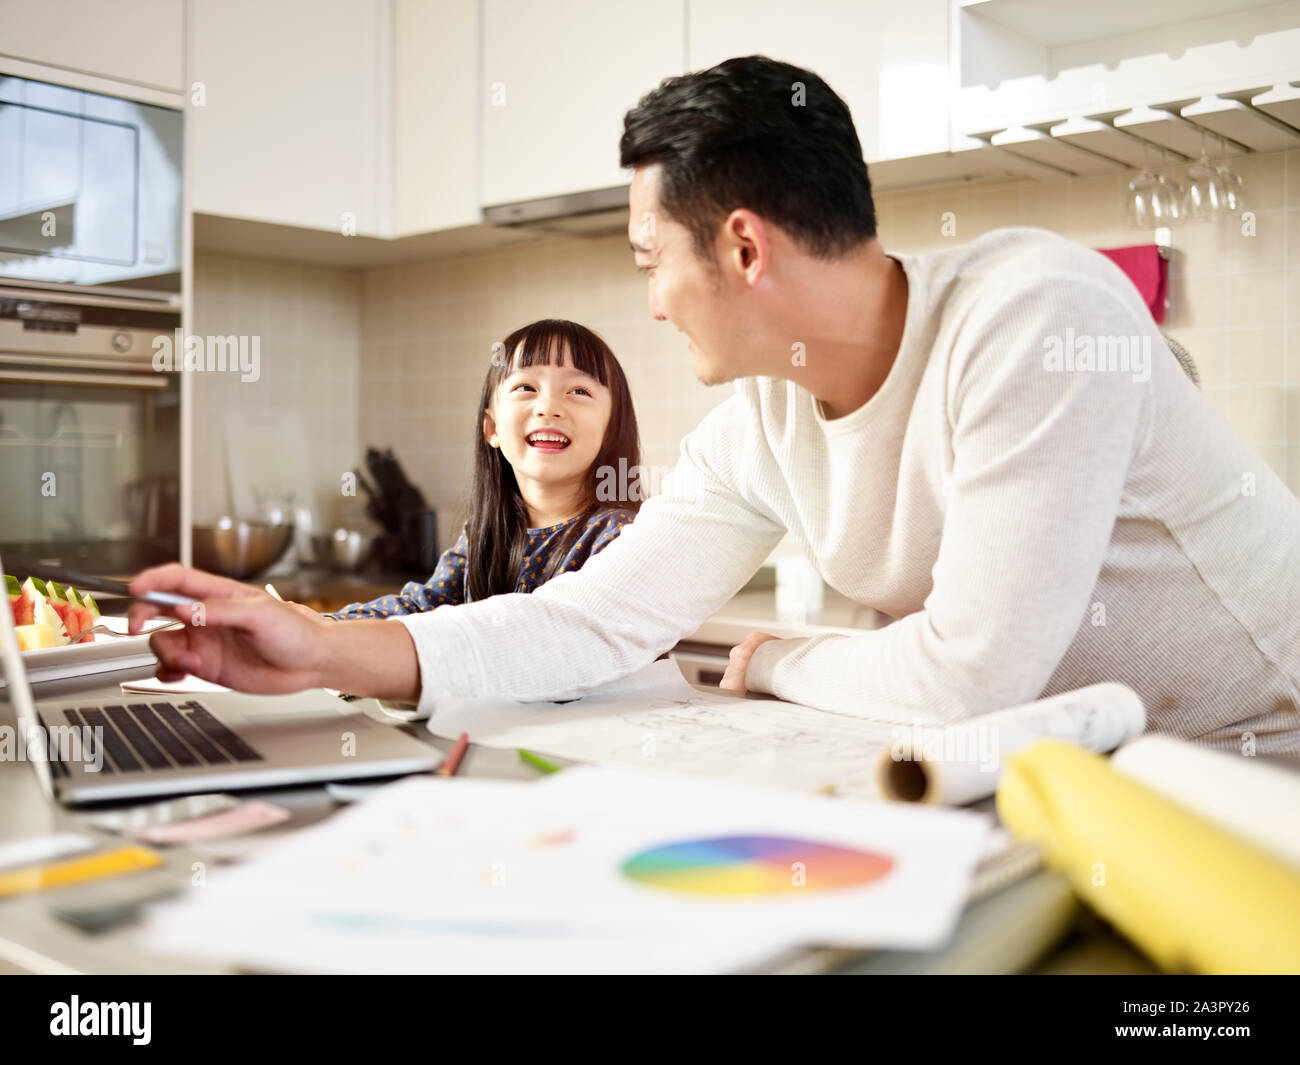 Young Asian man free lance designer père travailler à la maison tout en prenant soin de sa fille. Banque D'Images